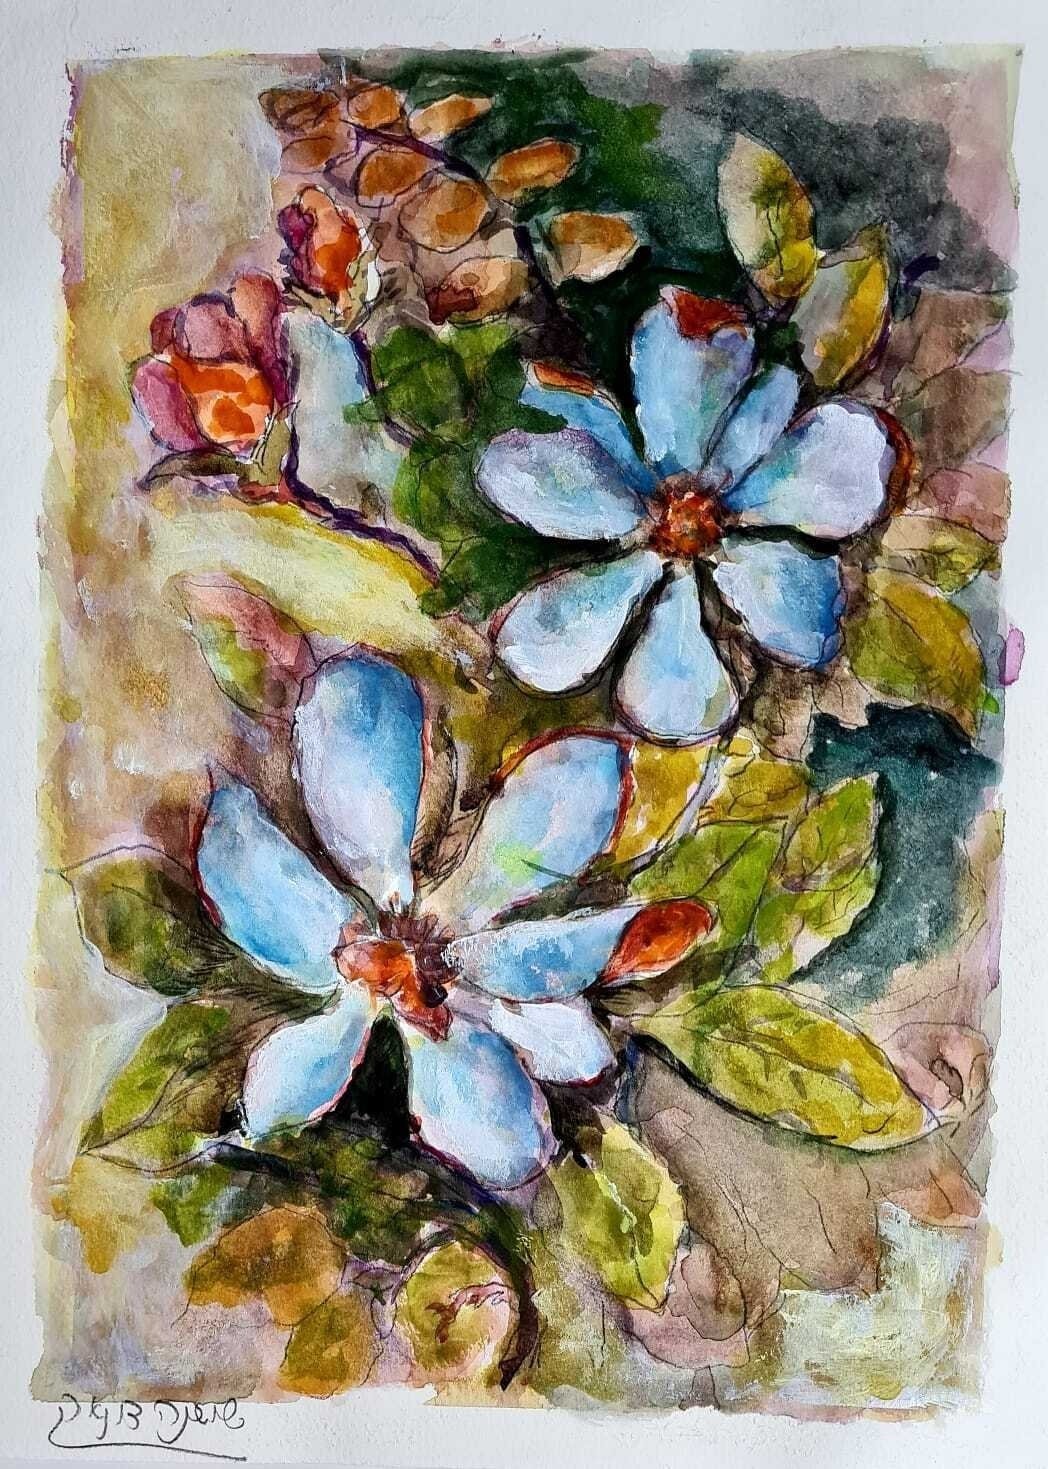 ציור מס. 59 - "פרחי אביב"